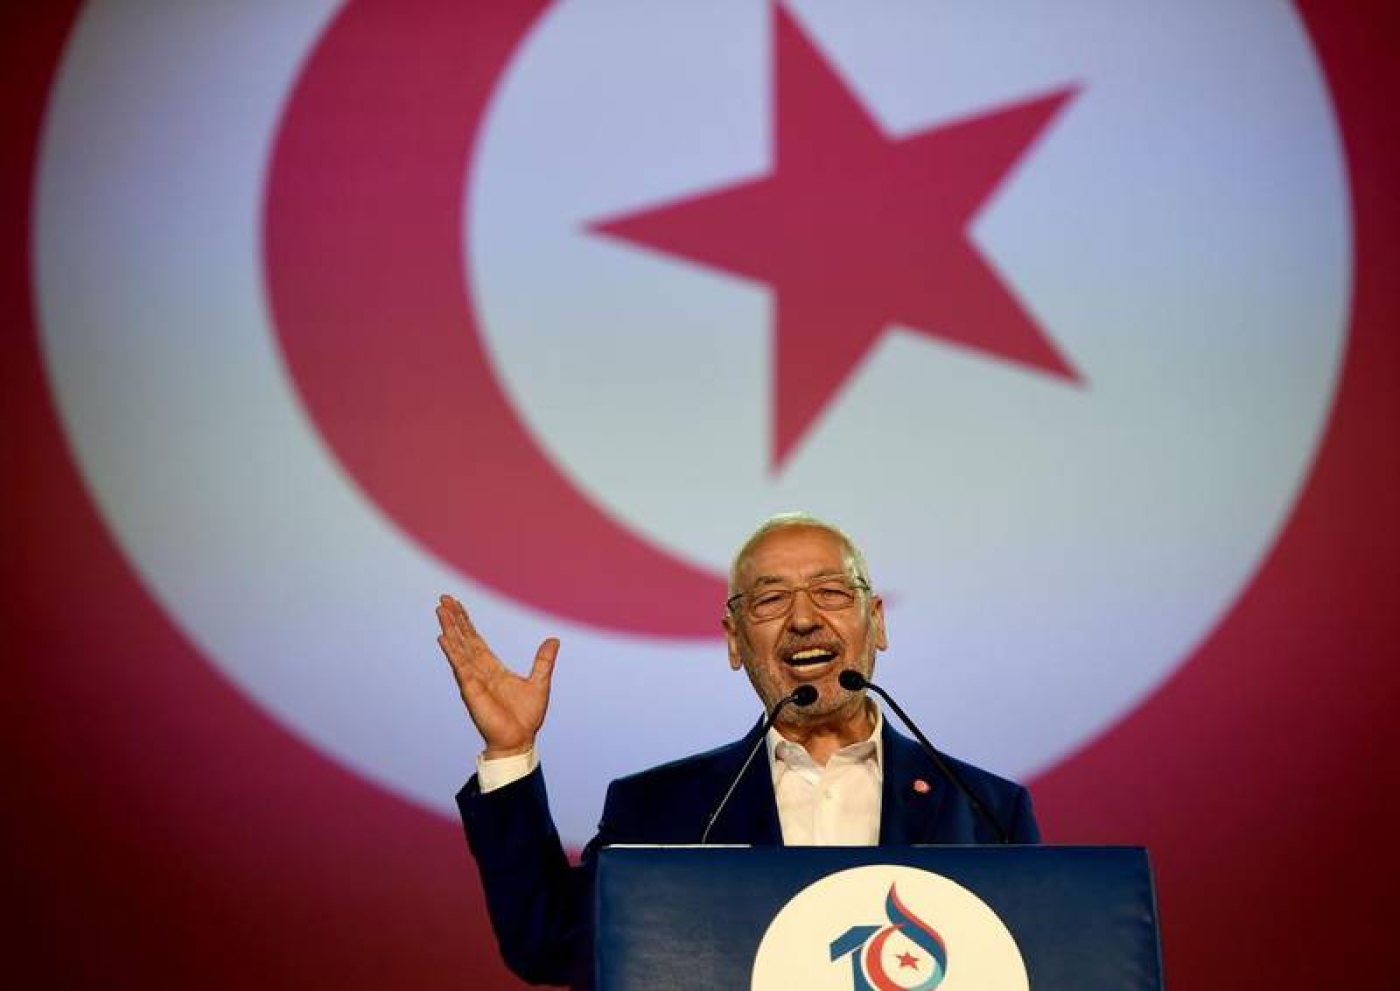 Principal chef de l’opposition en Tunisie, Rached Ghannouchi est devenu un fervent détracteur de Saied depuis sa prise de pouvoir le 25 juillet 2021 (AFP)